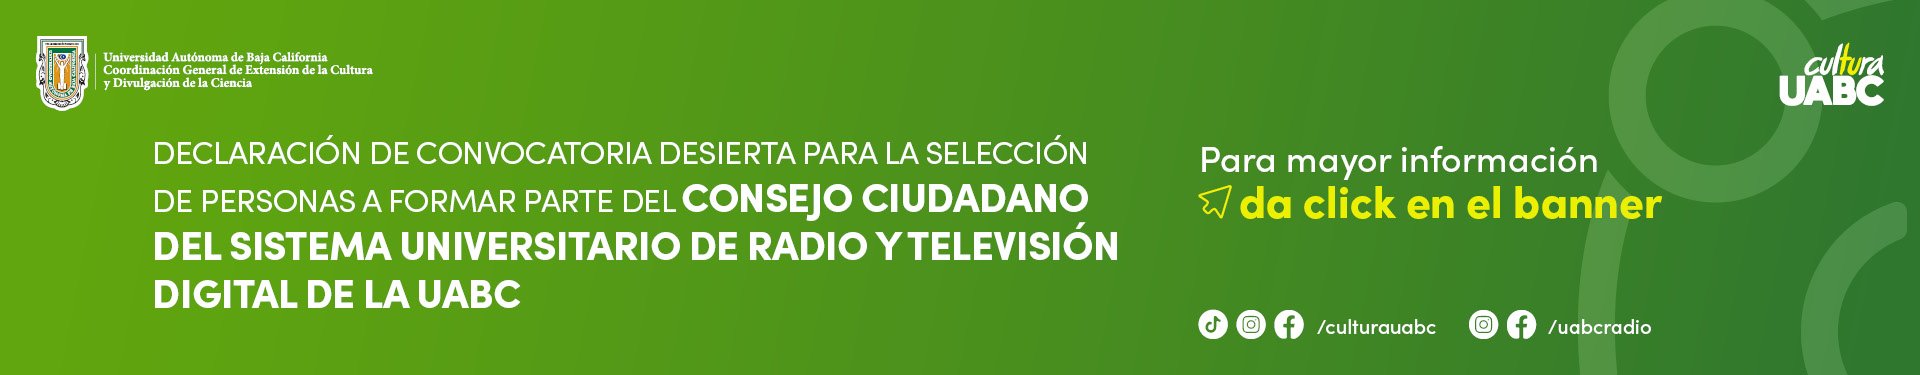 Declaración de convocatoria desierta para formar el Consejo Ciudadano del Sistema Universitario de Radio y Televisión Digital